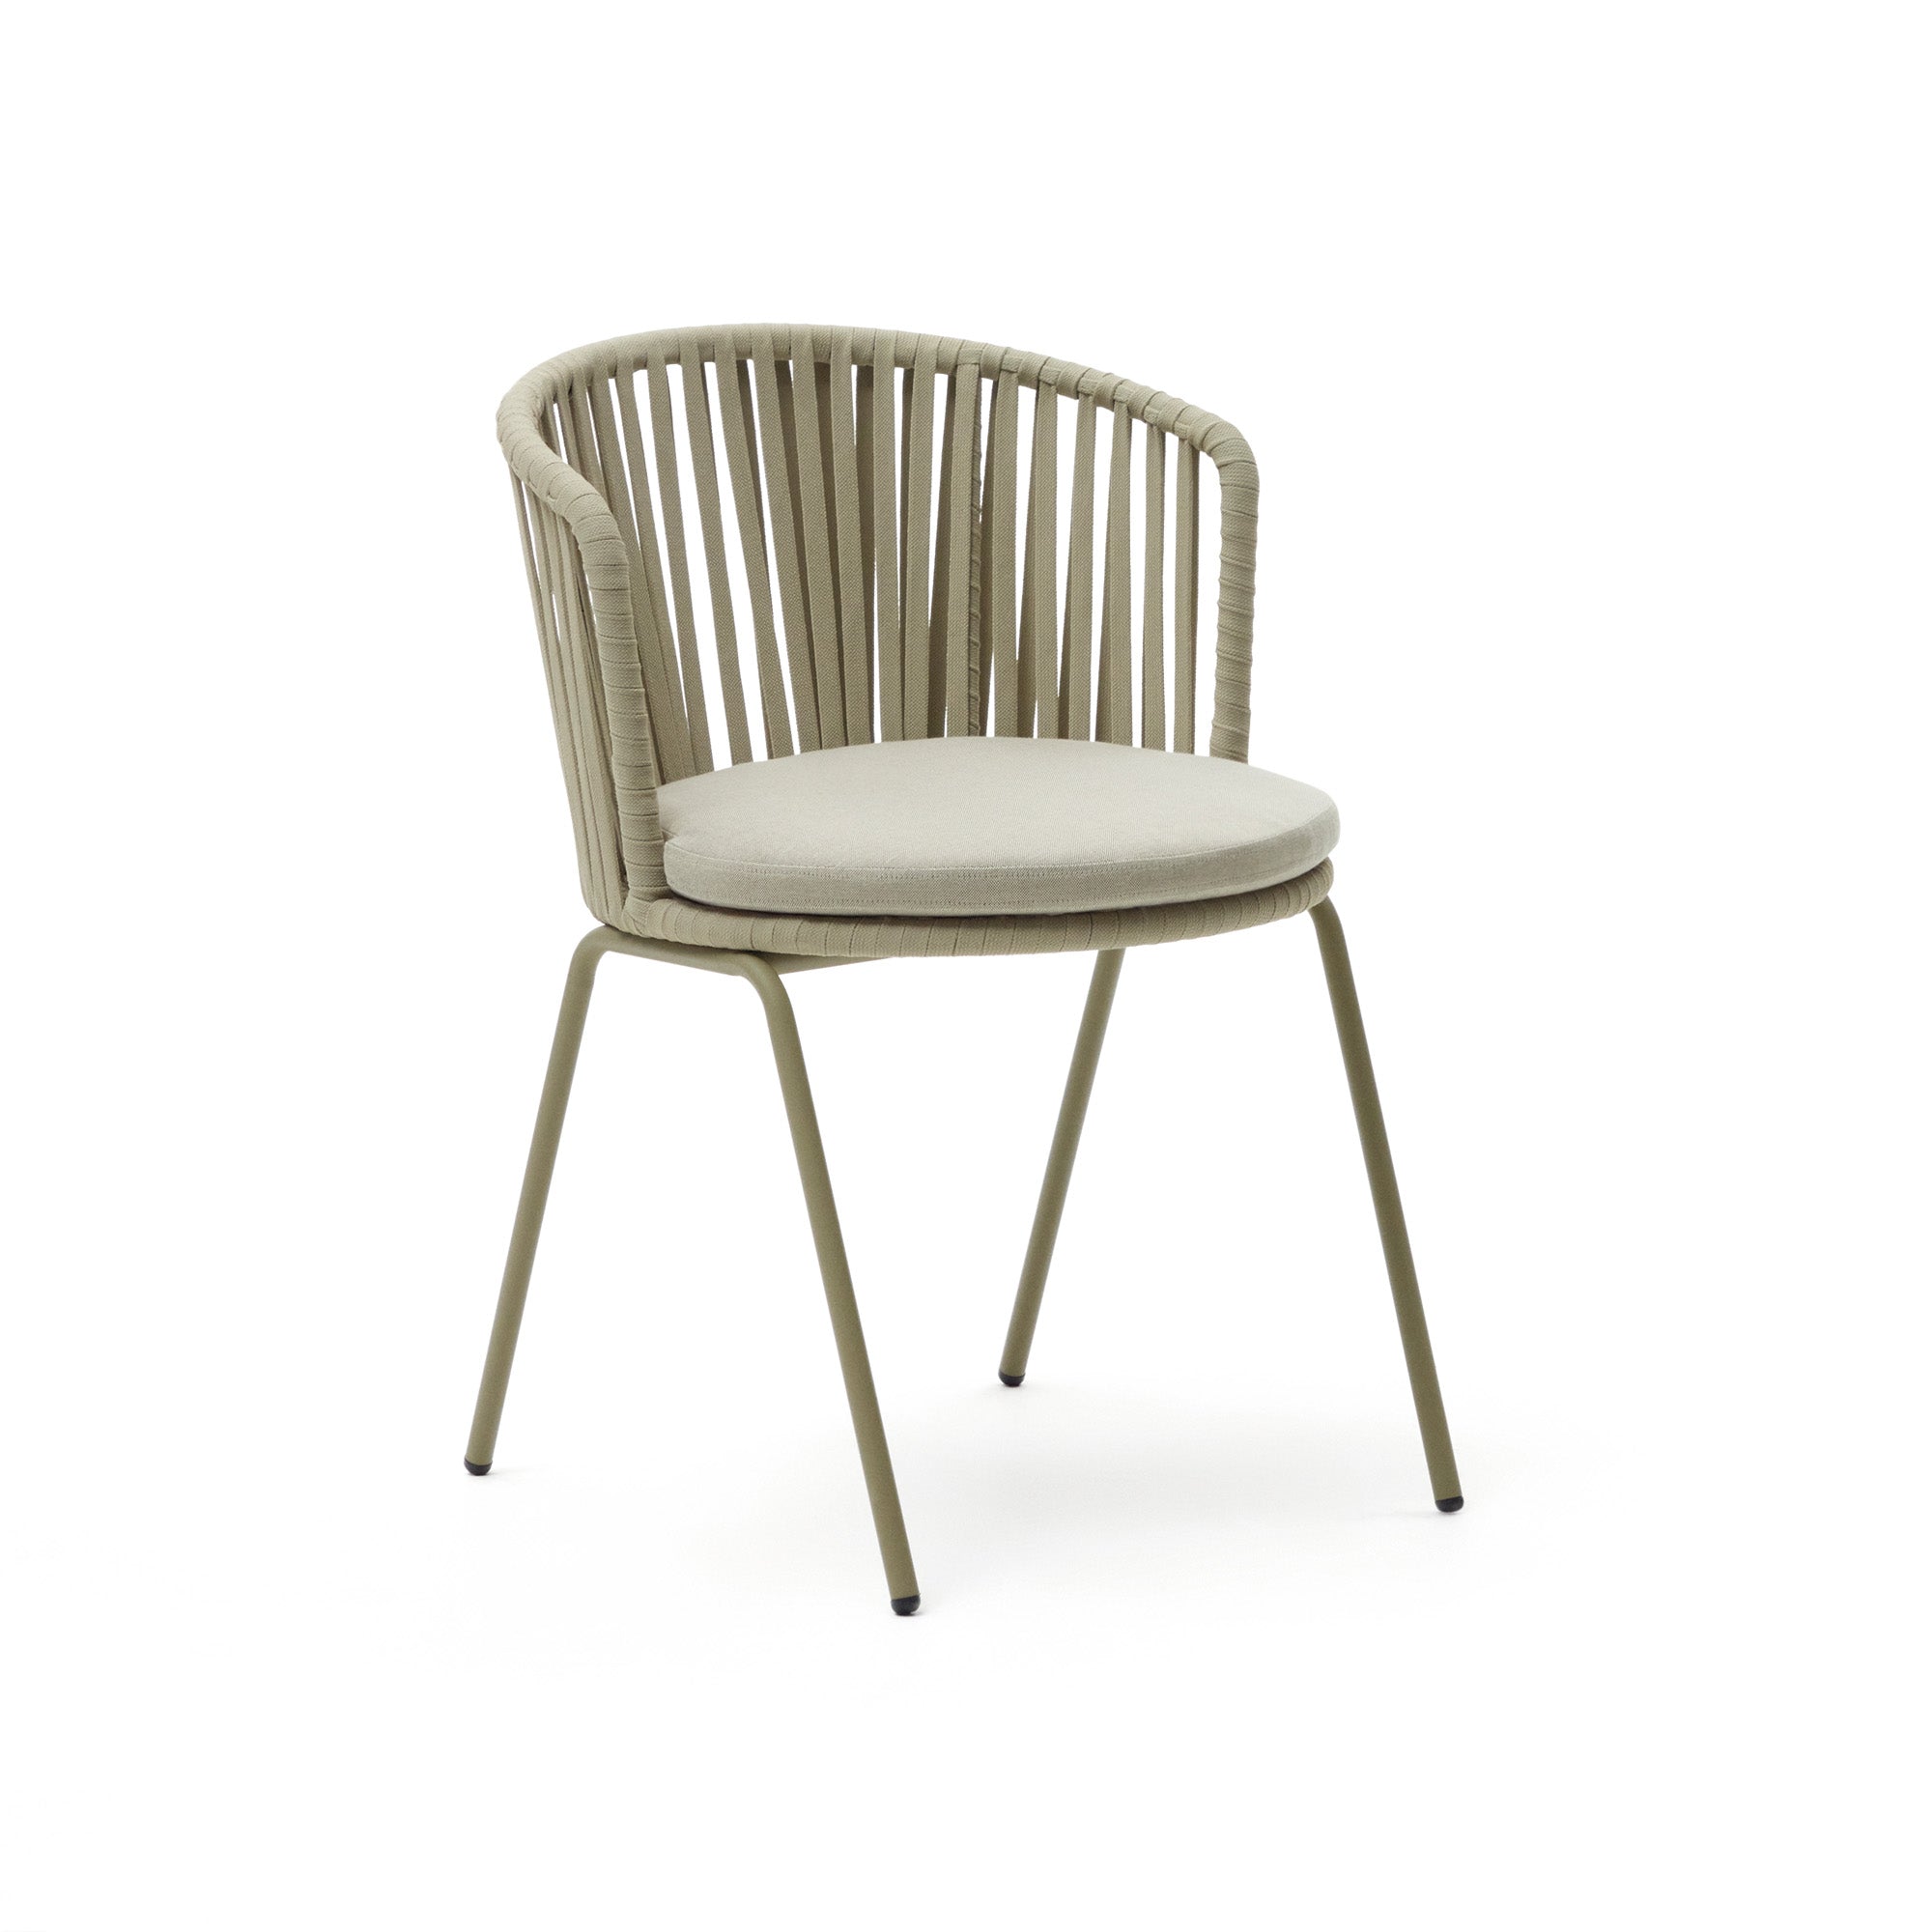 Saconca kültéri szék zsinórral és acélból. bézs színű festett kivitelben.